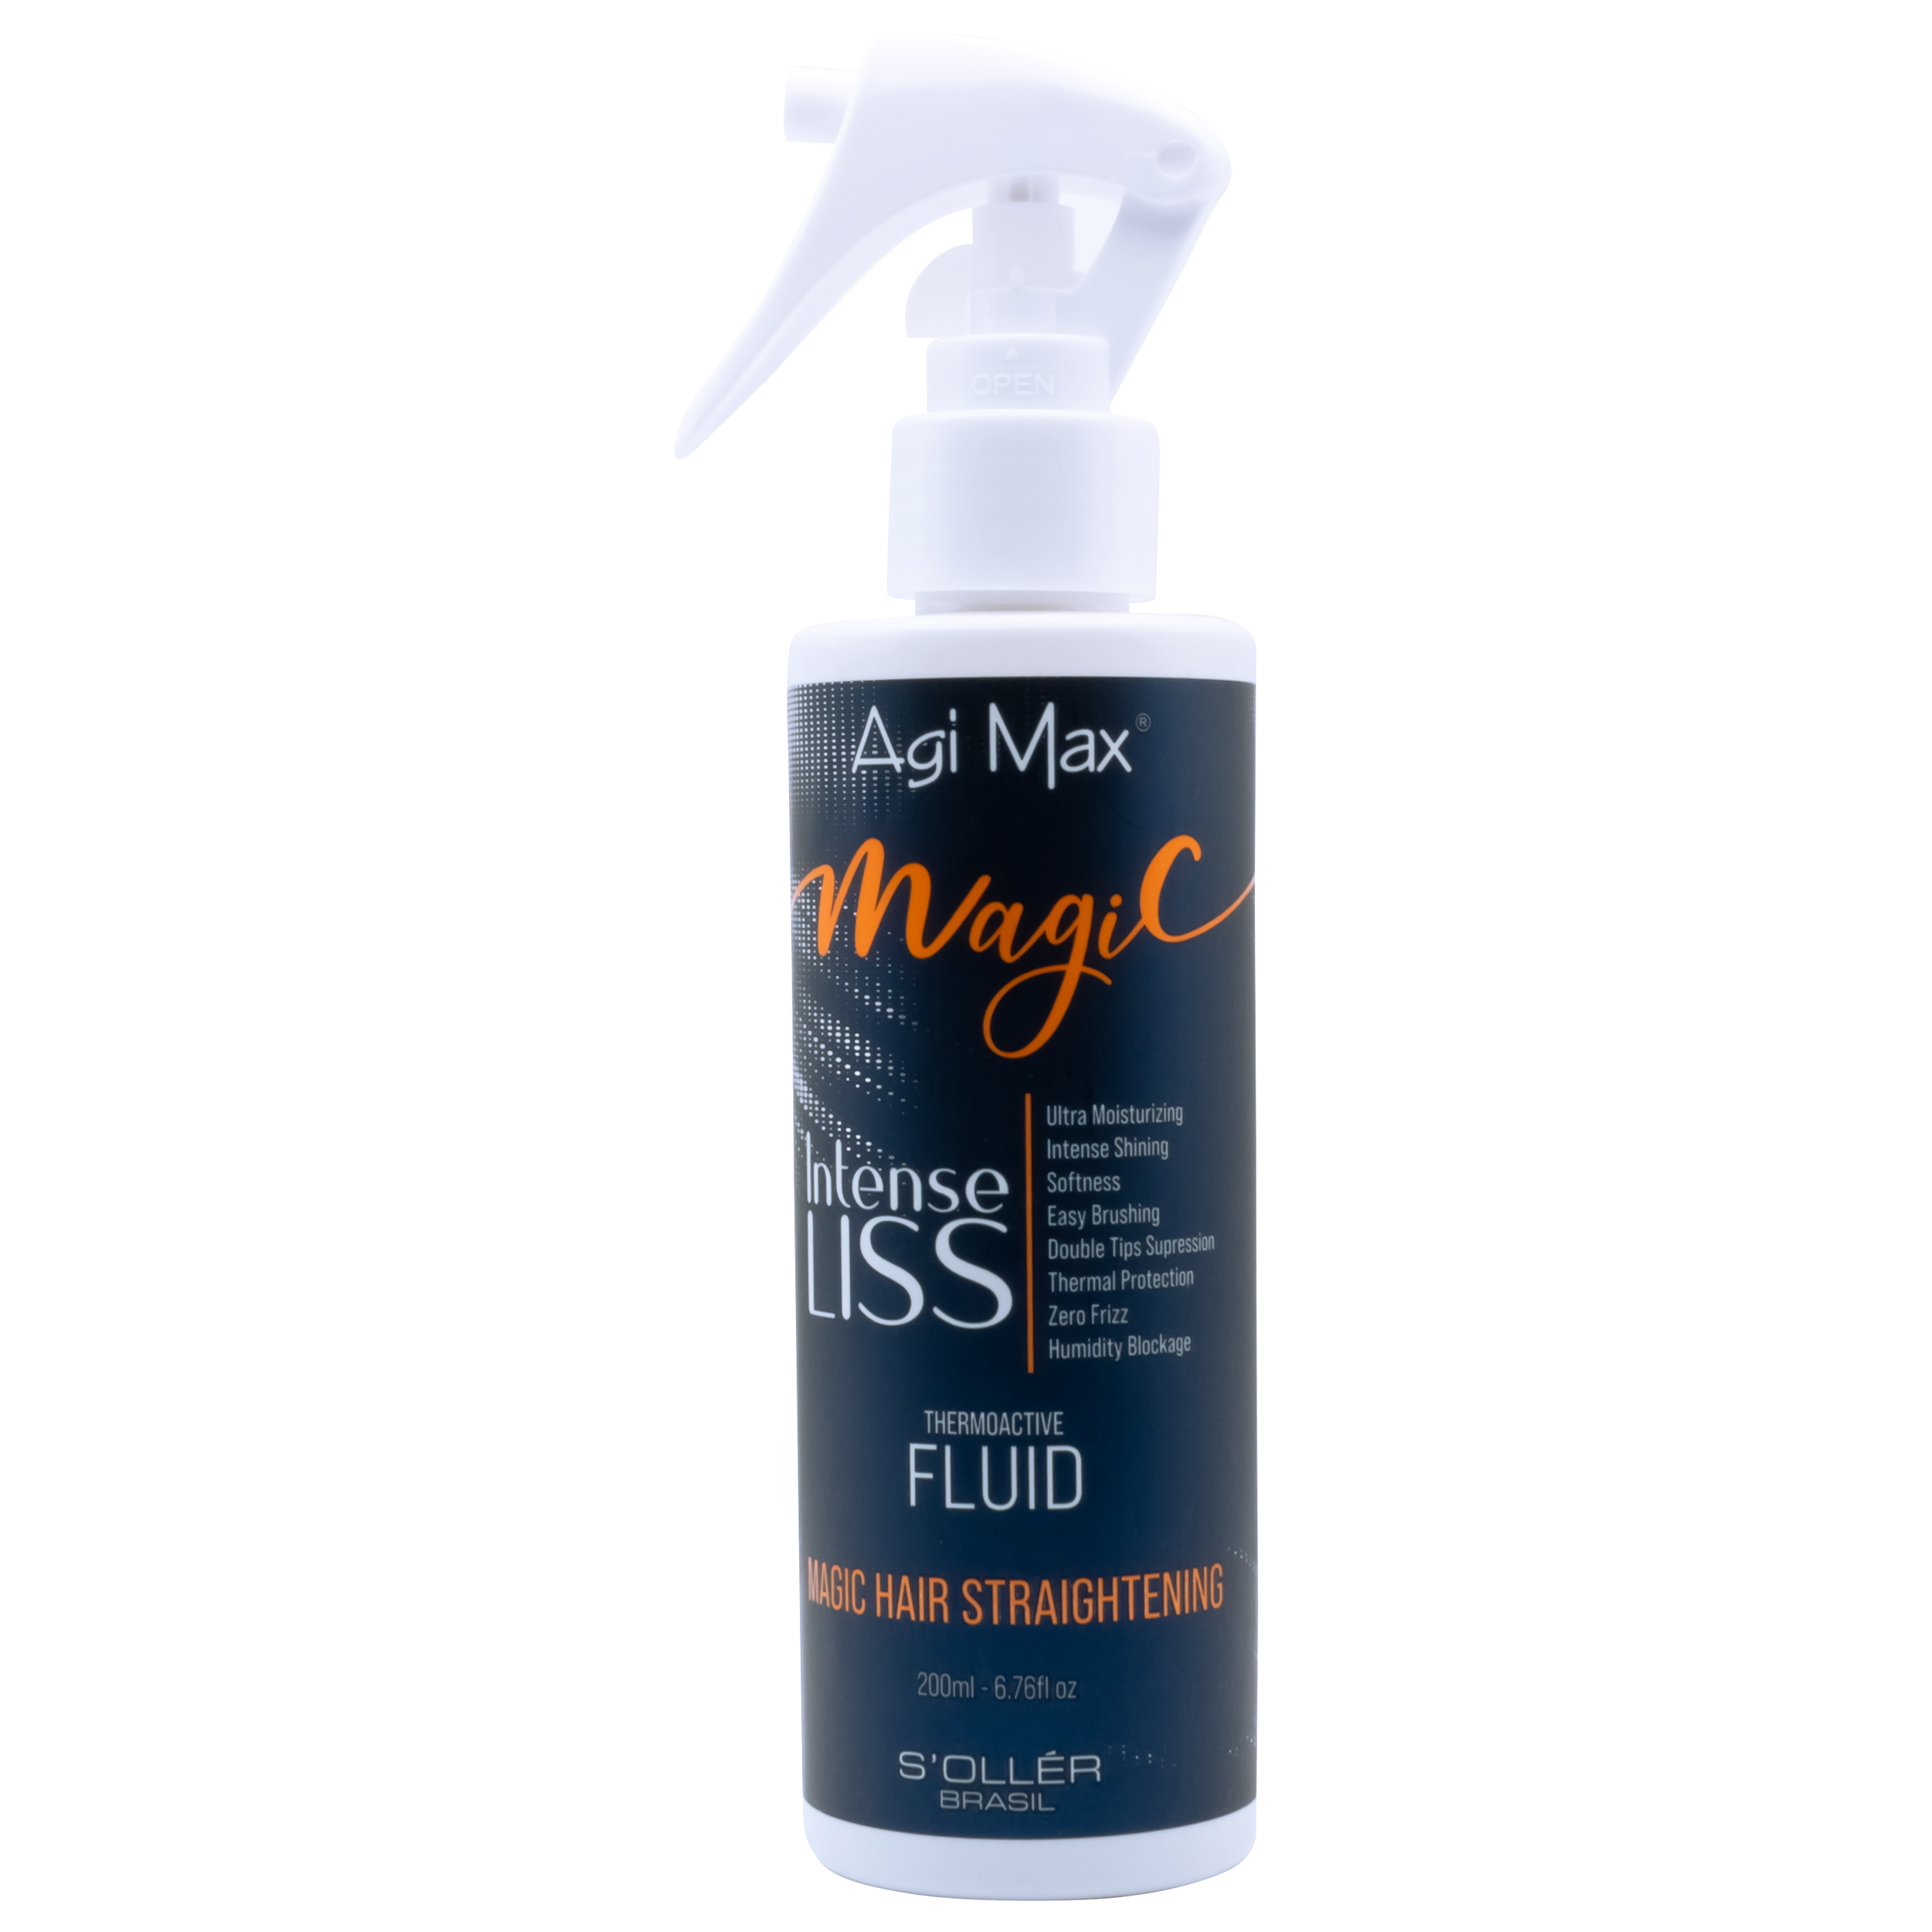 Produto Agi Max Magic Liss Fluído Thermo Ativo | Coleção Magic Liss